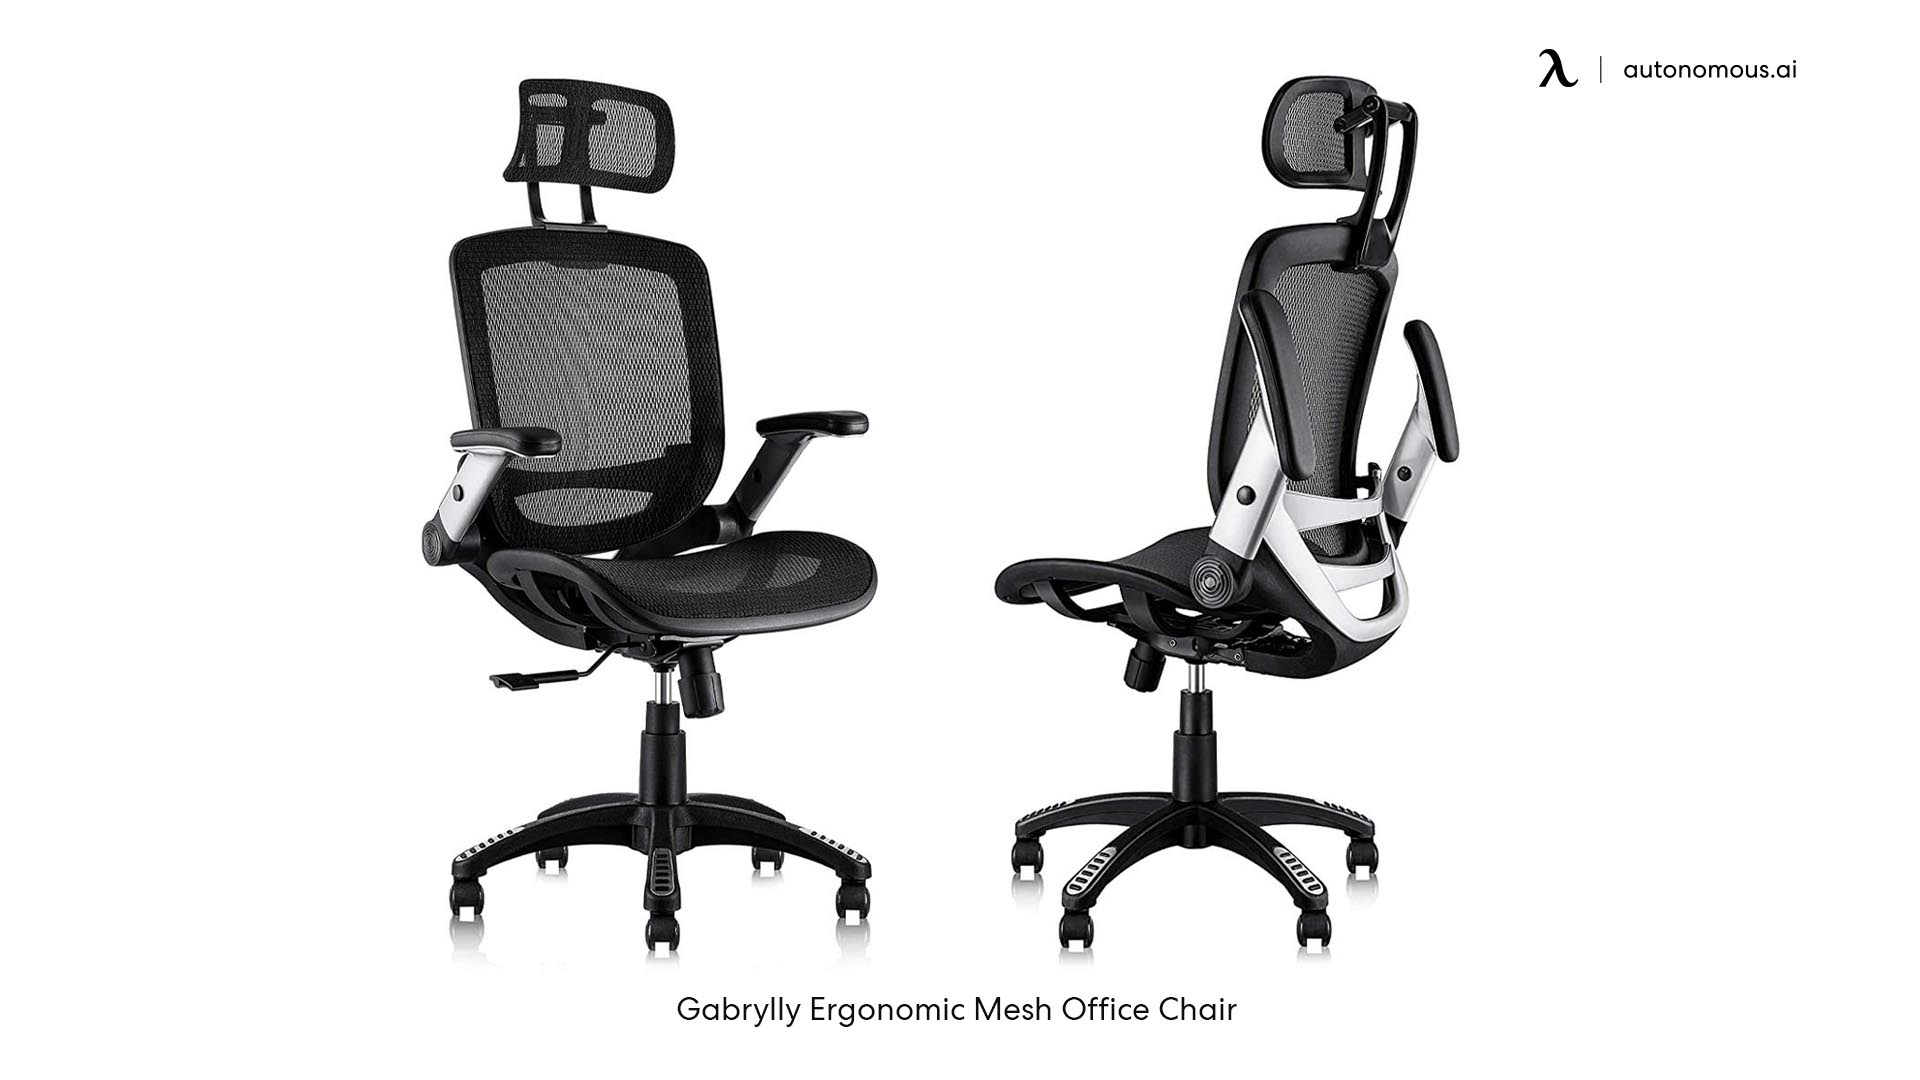 Gabrylly desk chair with wheels